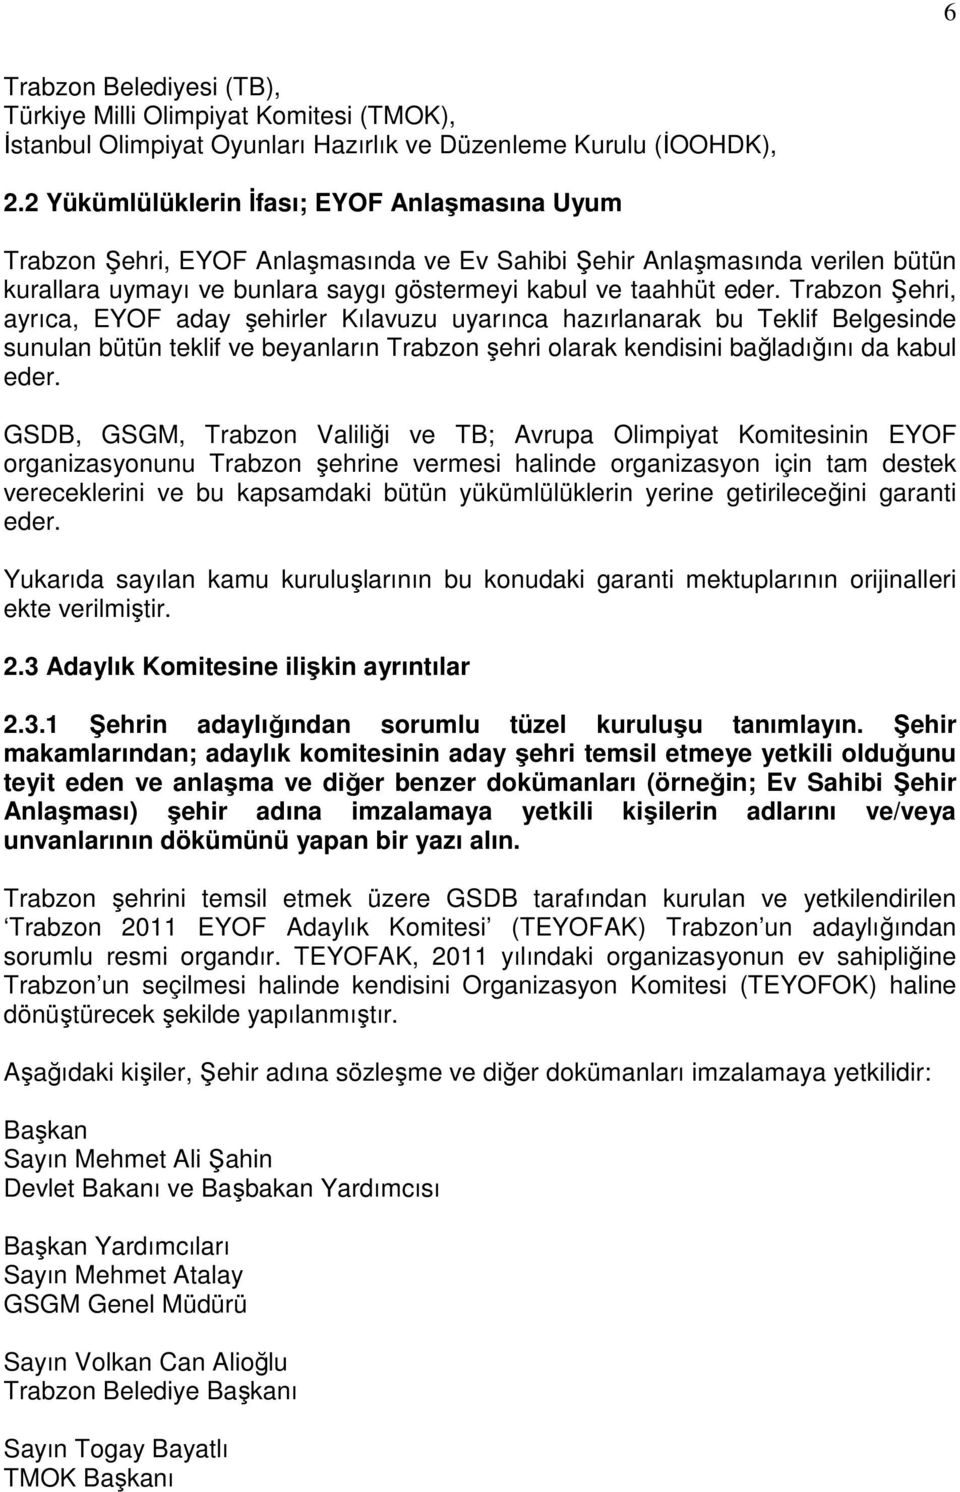 Trabzon Şehri, ayrıca, EYOF aday şehirler Kılavuzu uyarınca hazırlanarak bu Teklif Belgesinde sunulan bütün teklif ve beyanların Trabzon şehri olarak kendisini bağladığını da kabul eder.